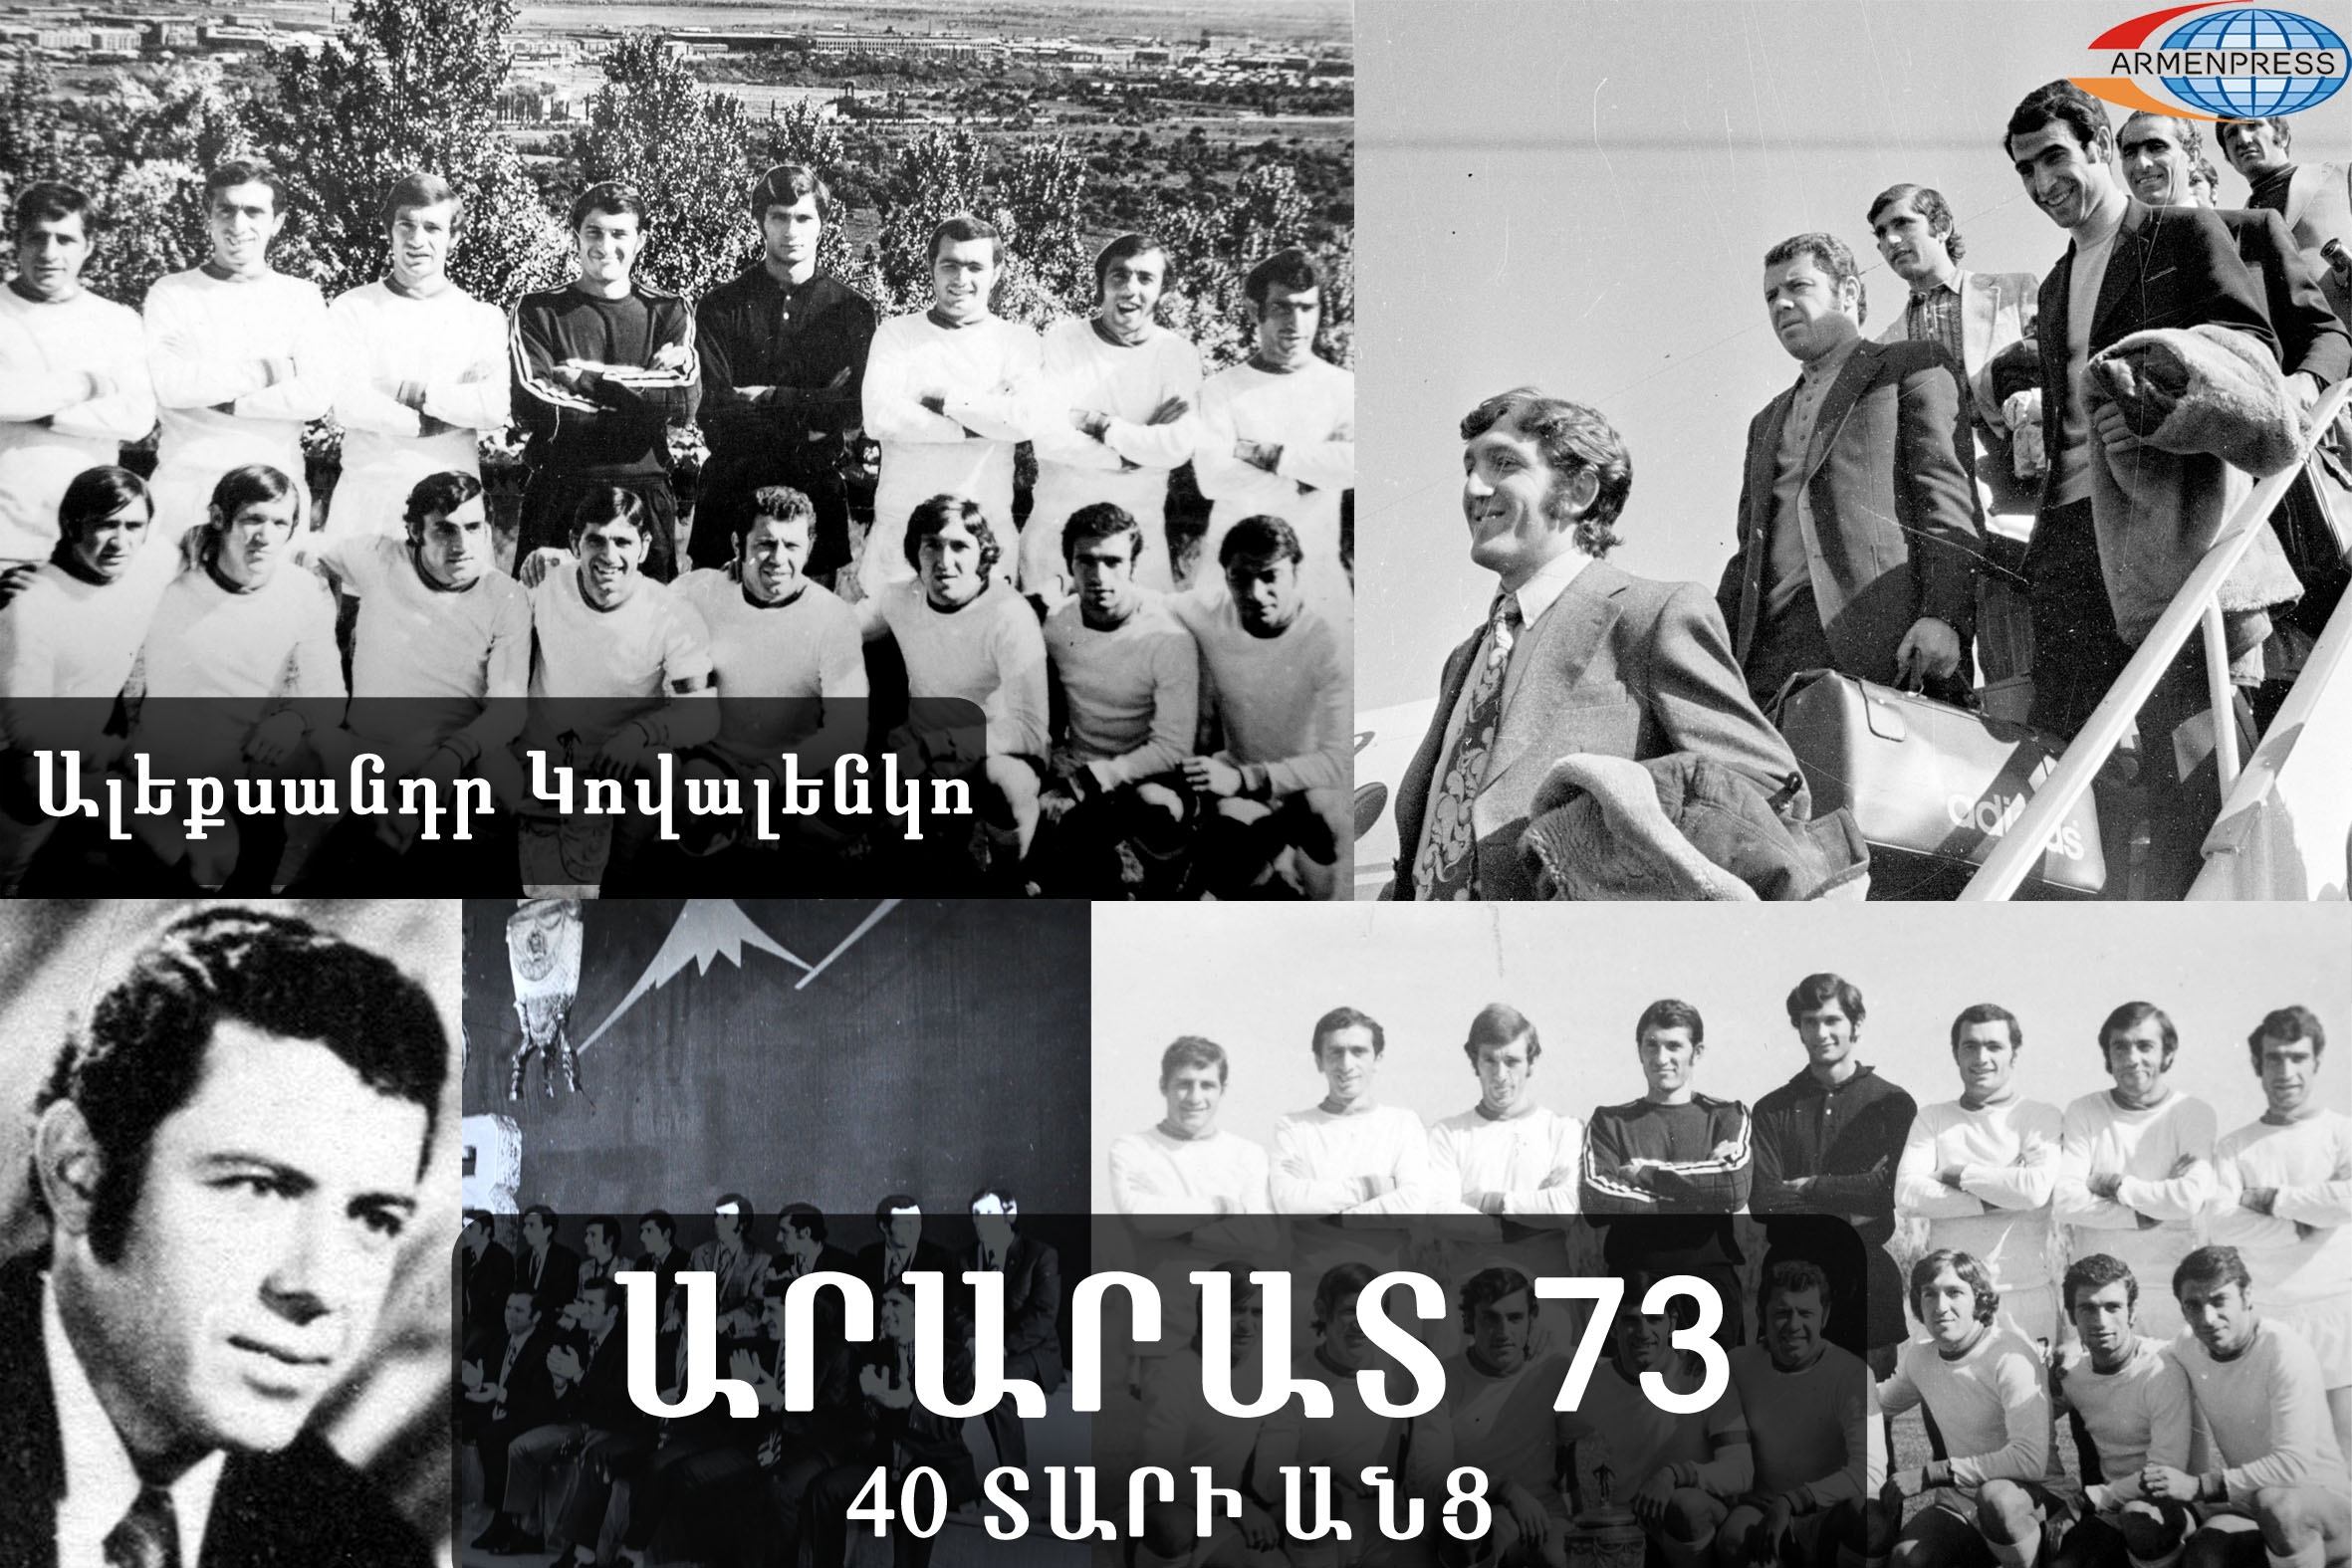 «Арарат-73» 40 лет спустя: члены легендарной команды вспоминают «настоящего 
армянина» Александра Коваленко